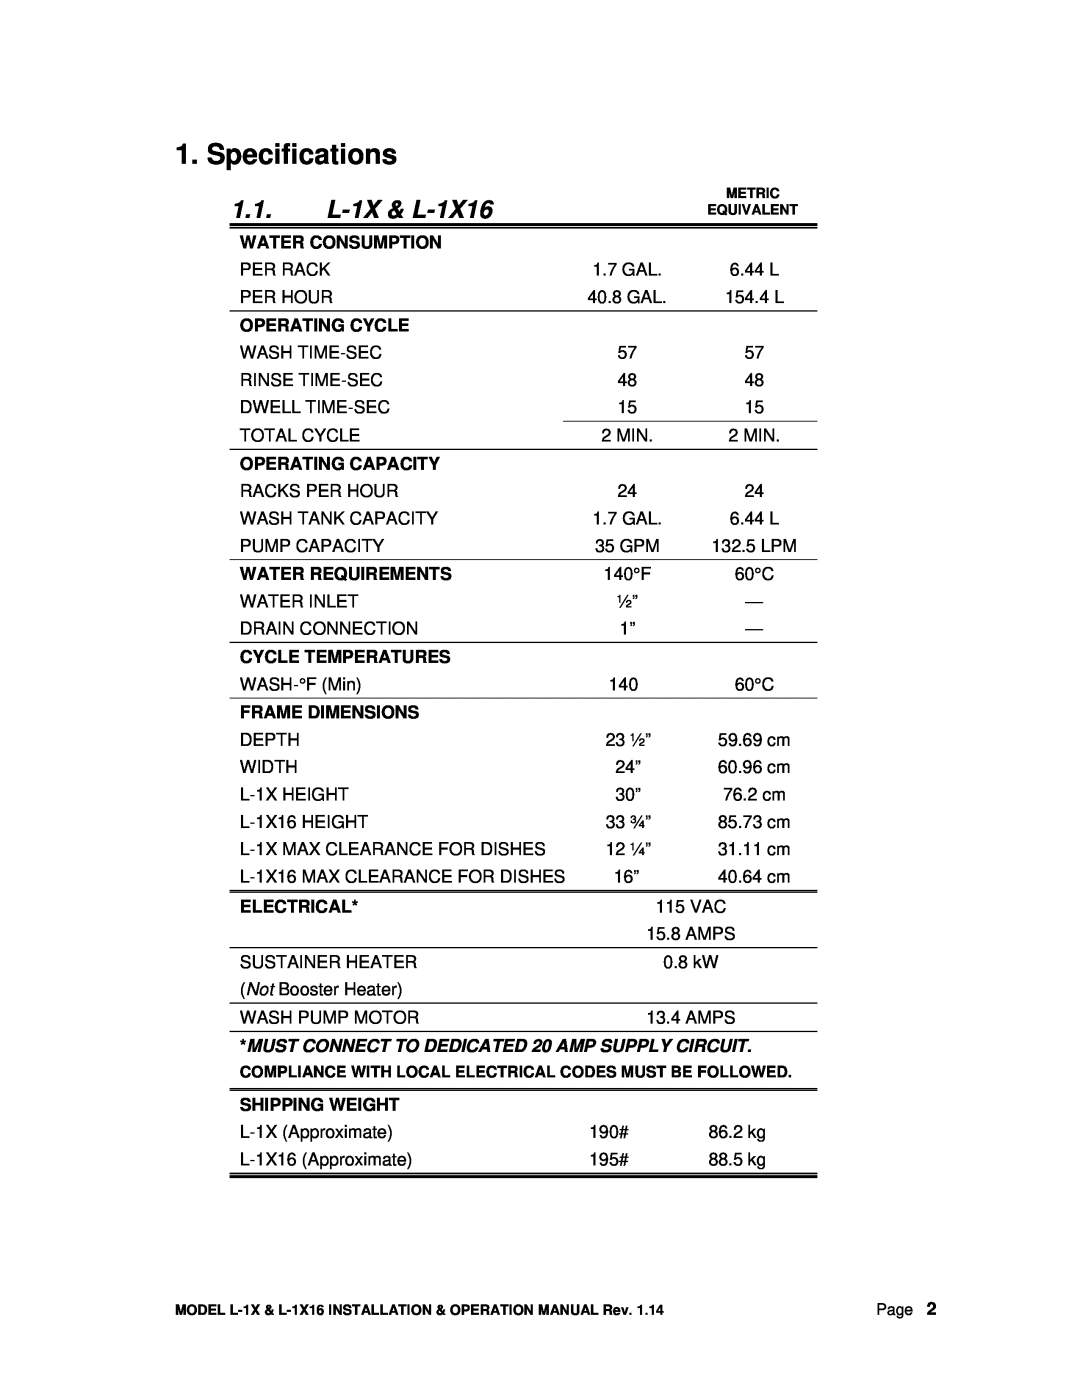 CMA Dishmachines manual Specifications, 1.1.L-1X& L-1X16 